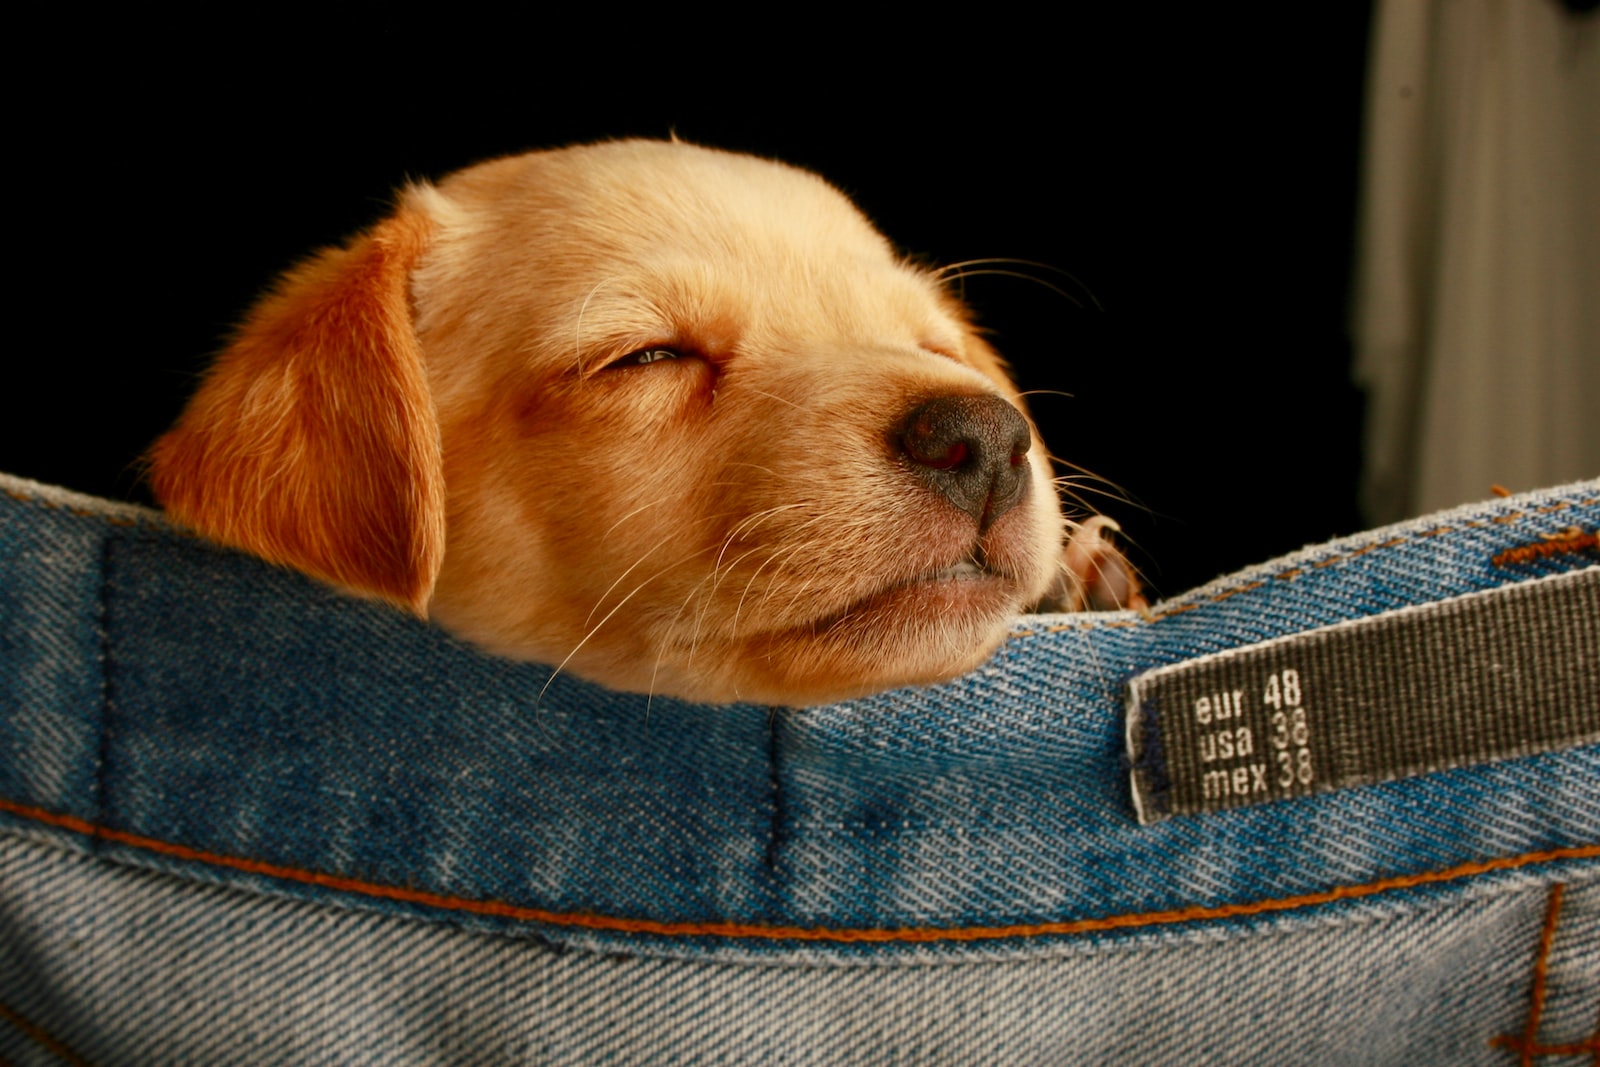 How Long Does a Dog Sleep?